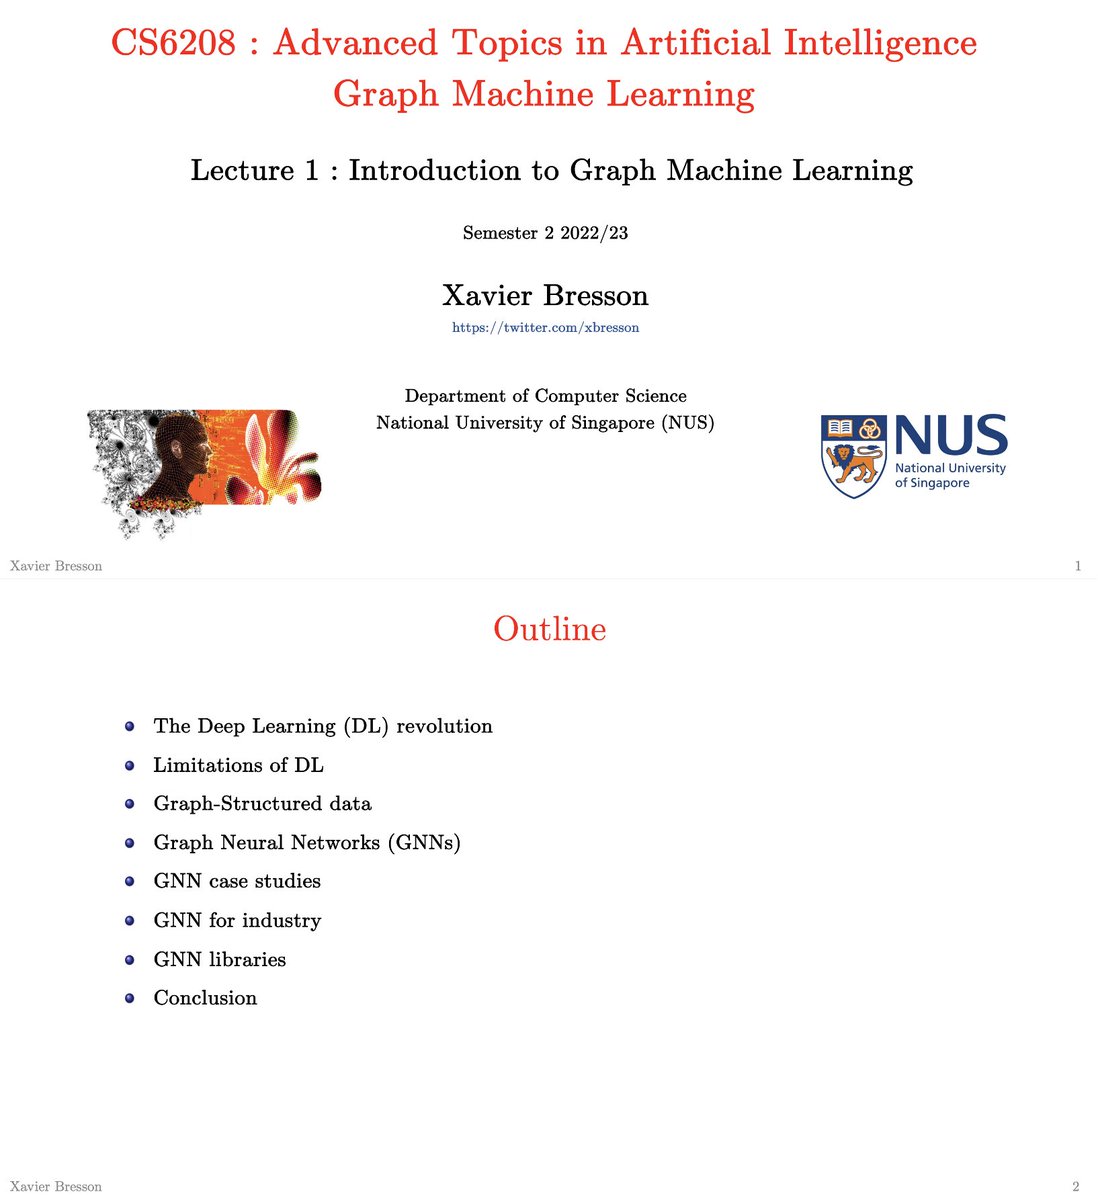 深入浅出理解图机器学习：Lecture 1介绍与推荐书籍和库
